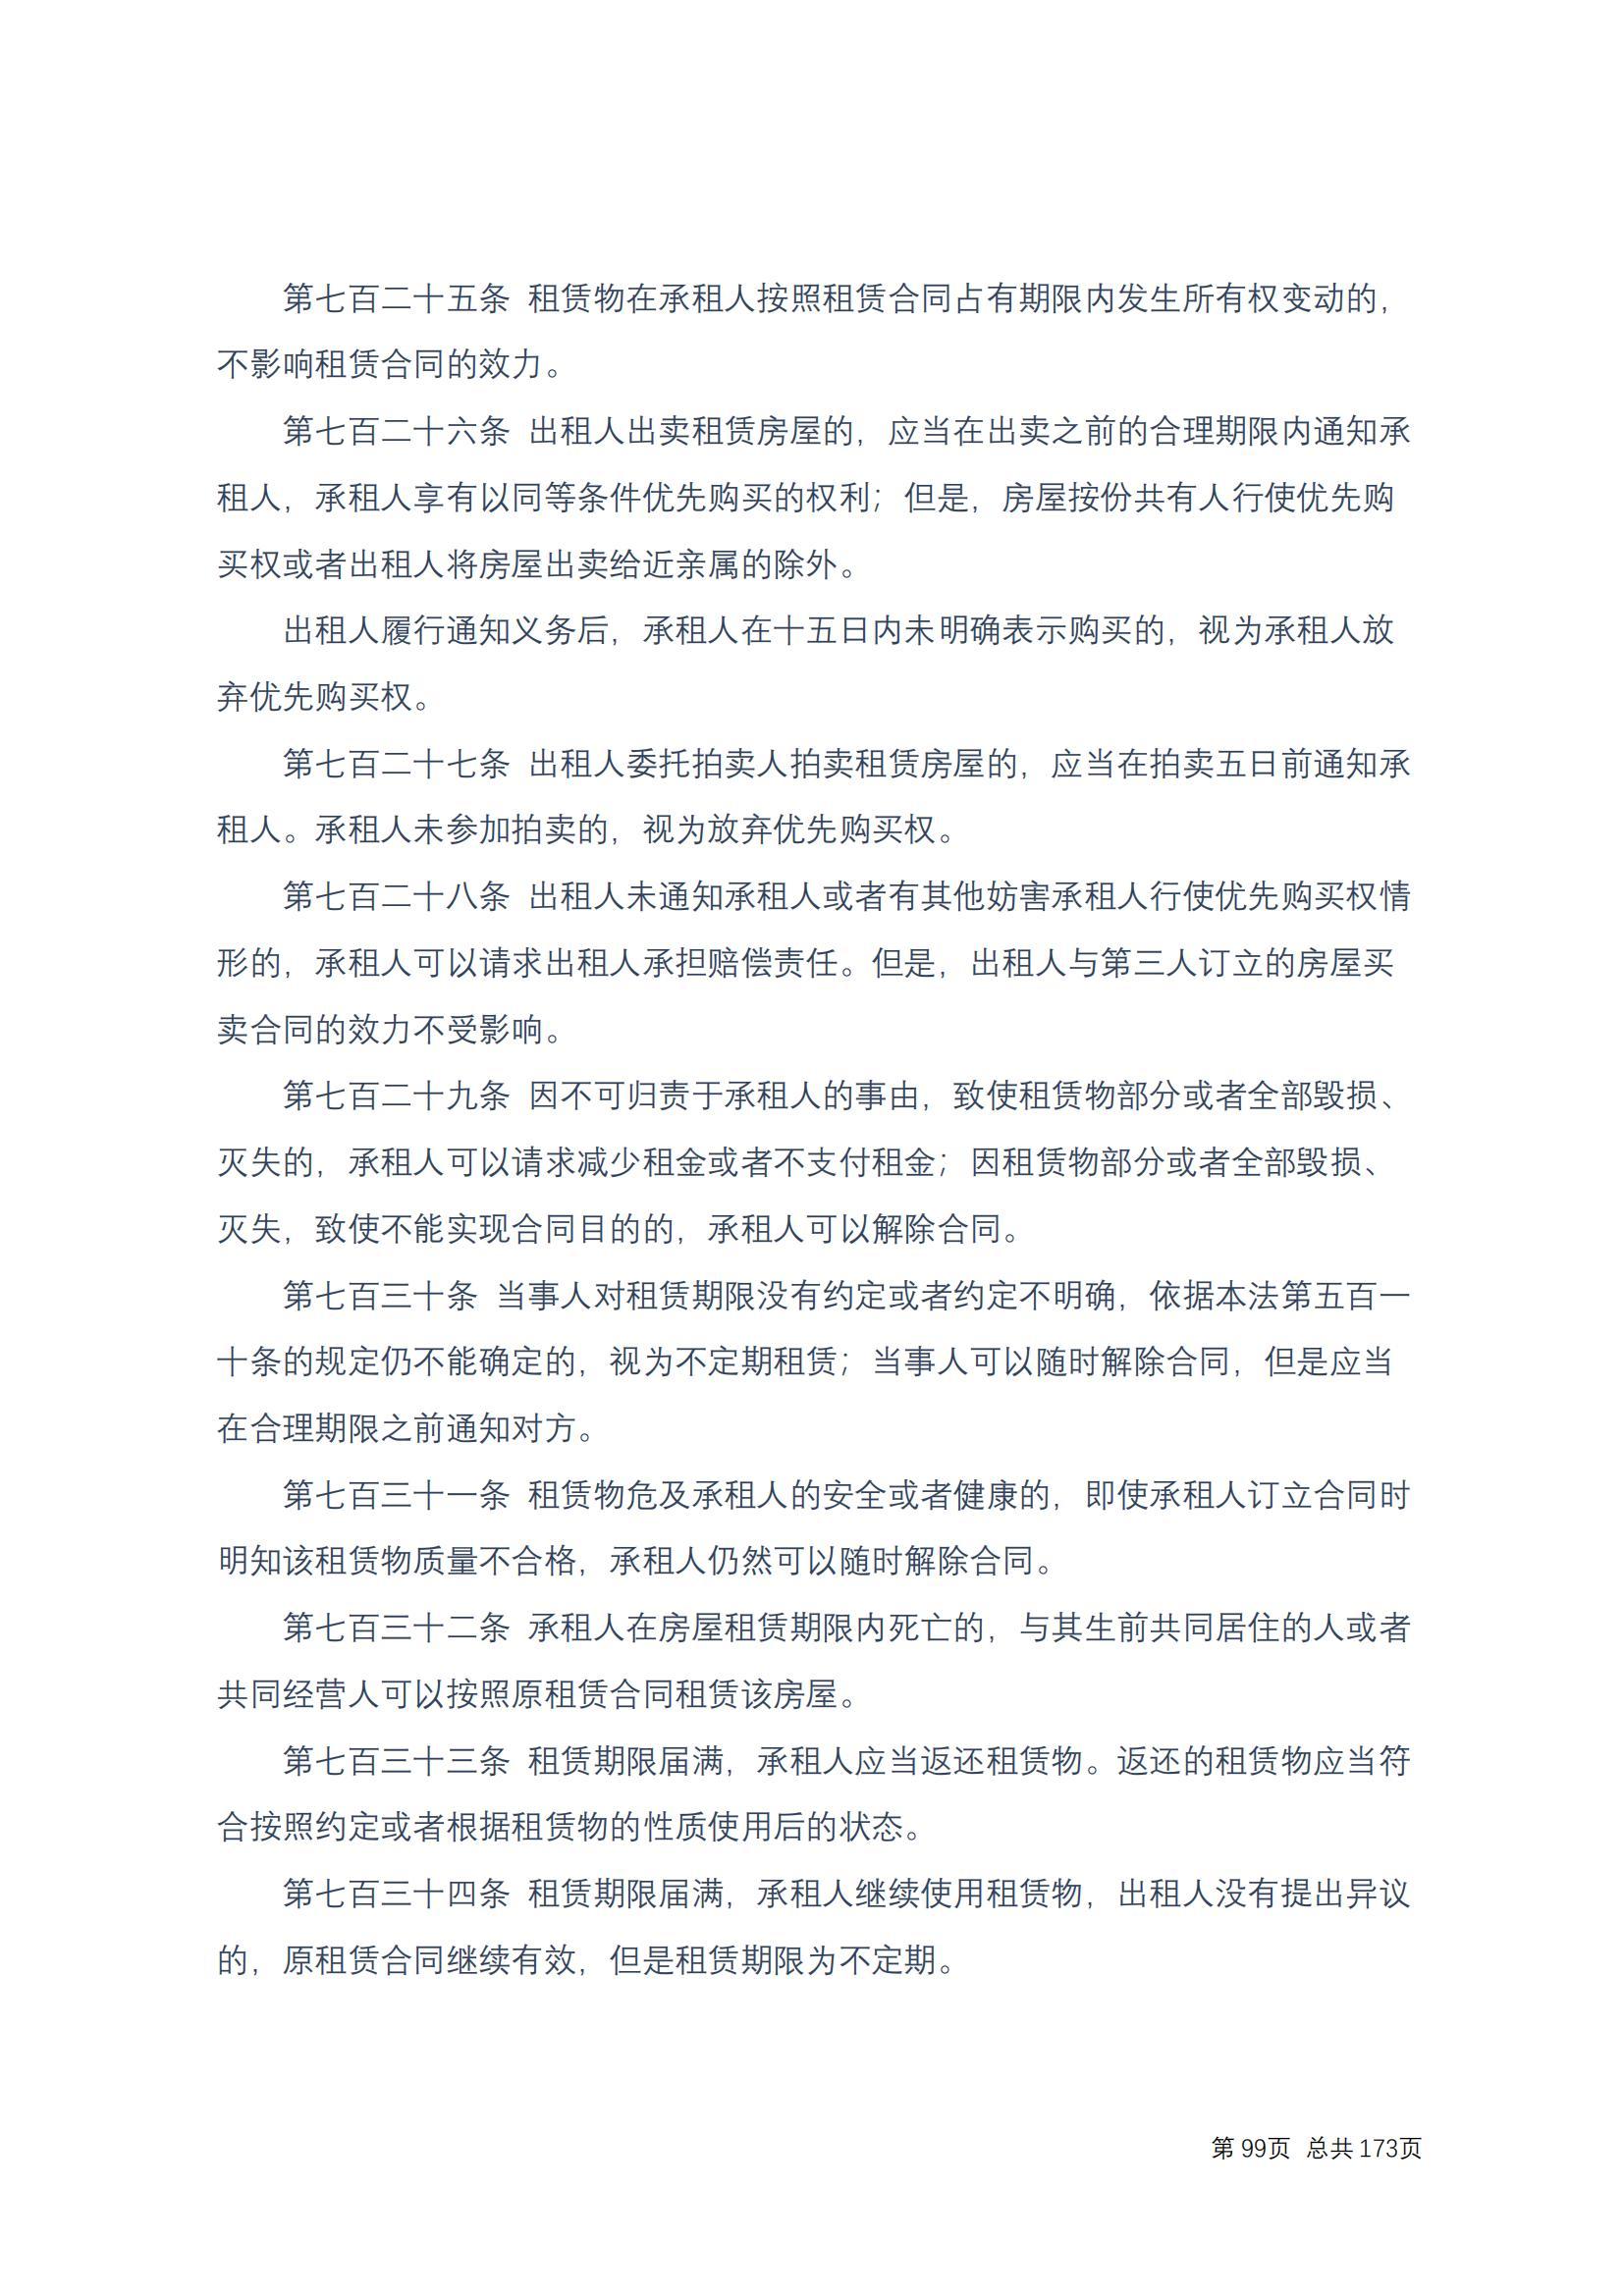 中华人民共和国民法典 修改过_98